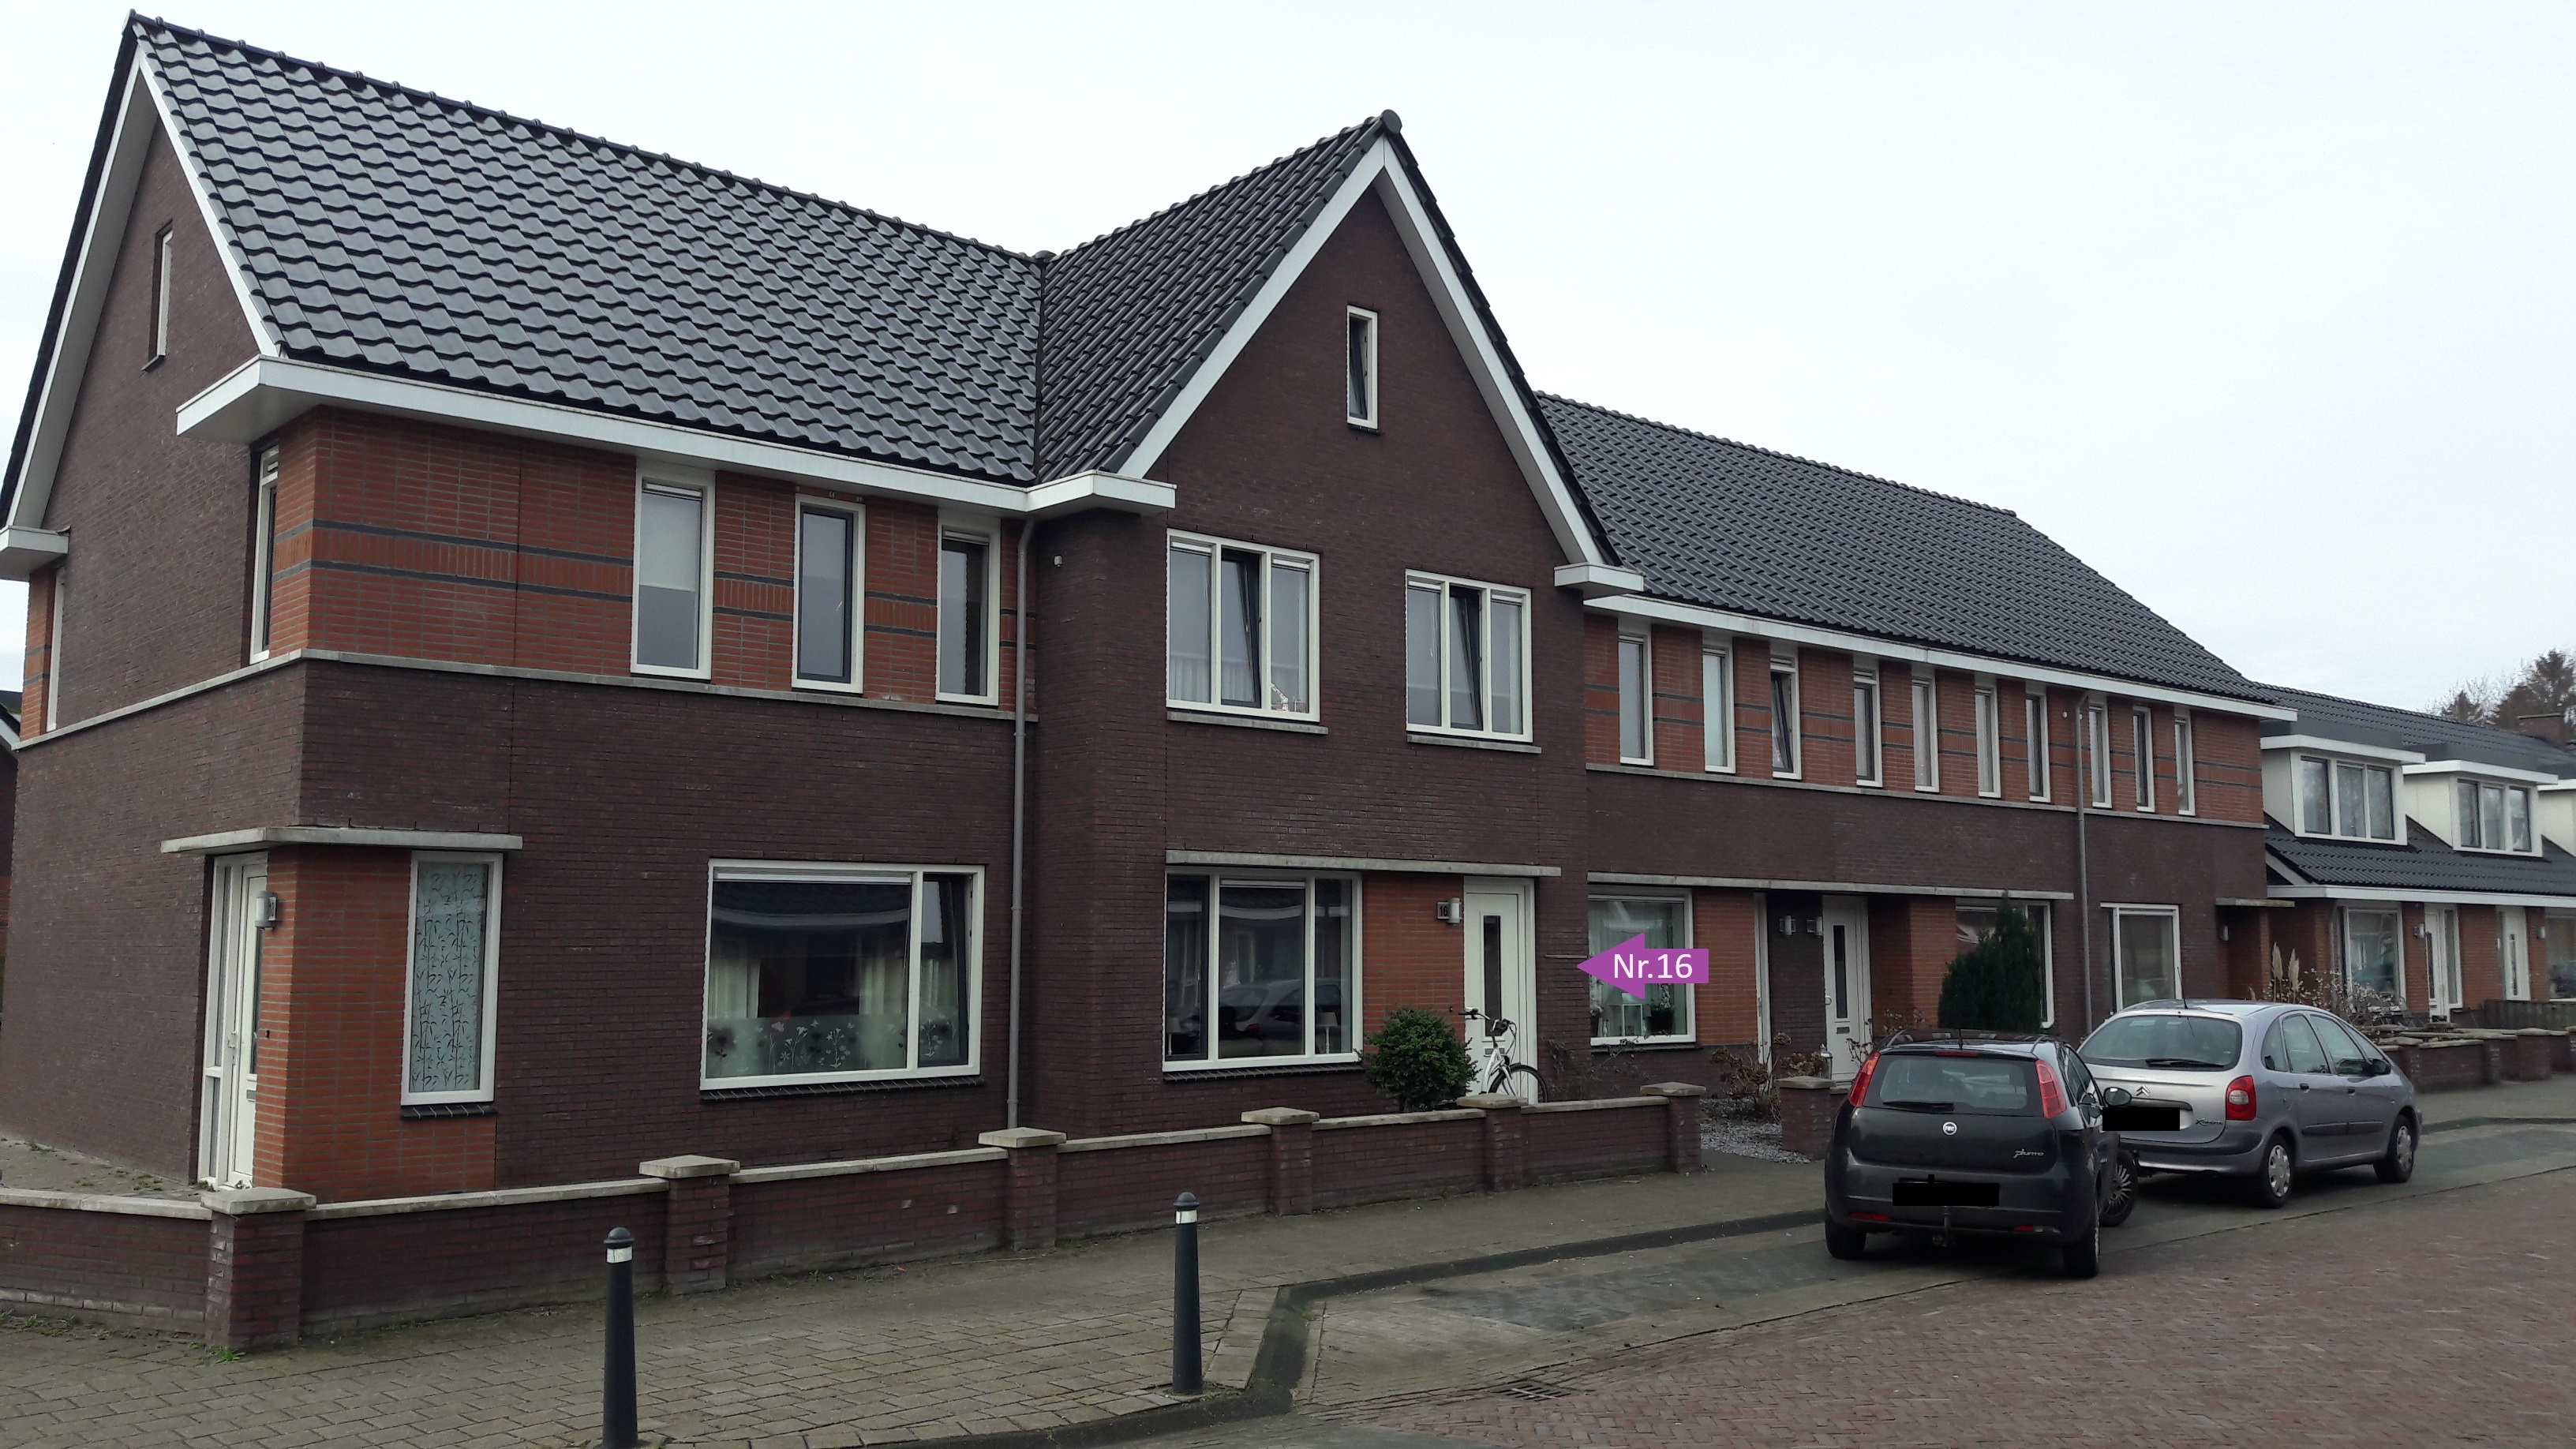 Schaepmanstraat 16, 7742 AR Coevorden, Nederland